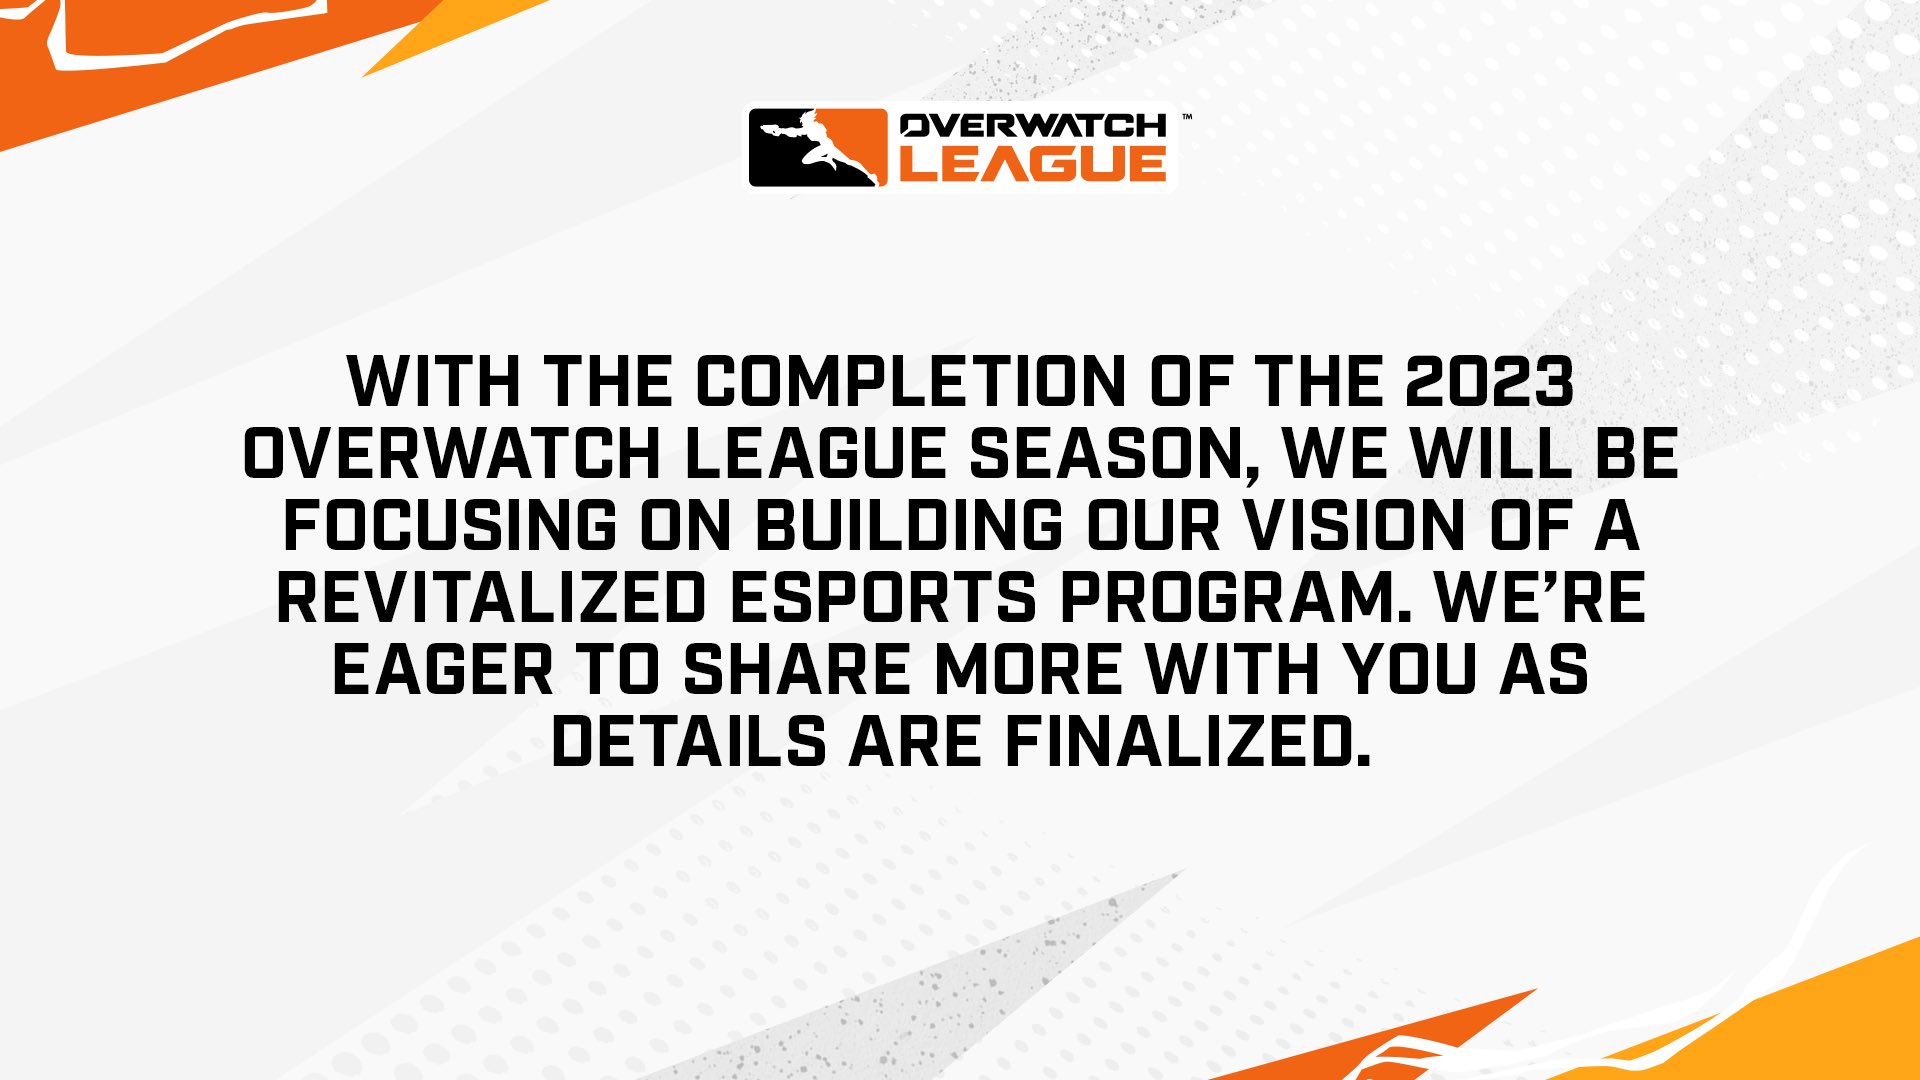 Con la finalización de la temporada 2023 de la Overwatch League, nos centraremos en construir nuestra visión de un programa de deportes electrónicos revitalizado.  Estamos ansiosos por compartir más con usted a medida que se finalicen los detalles.